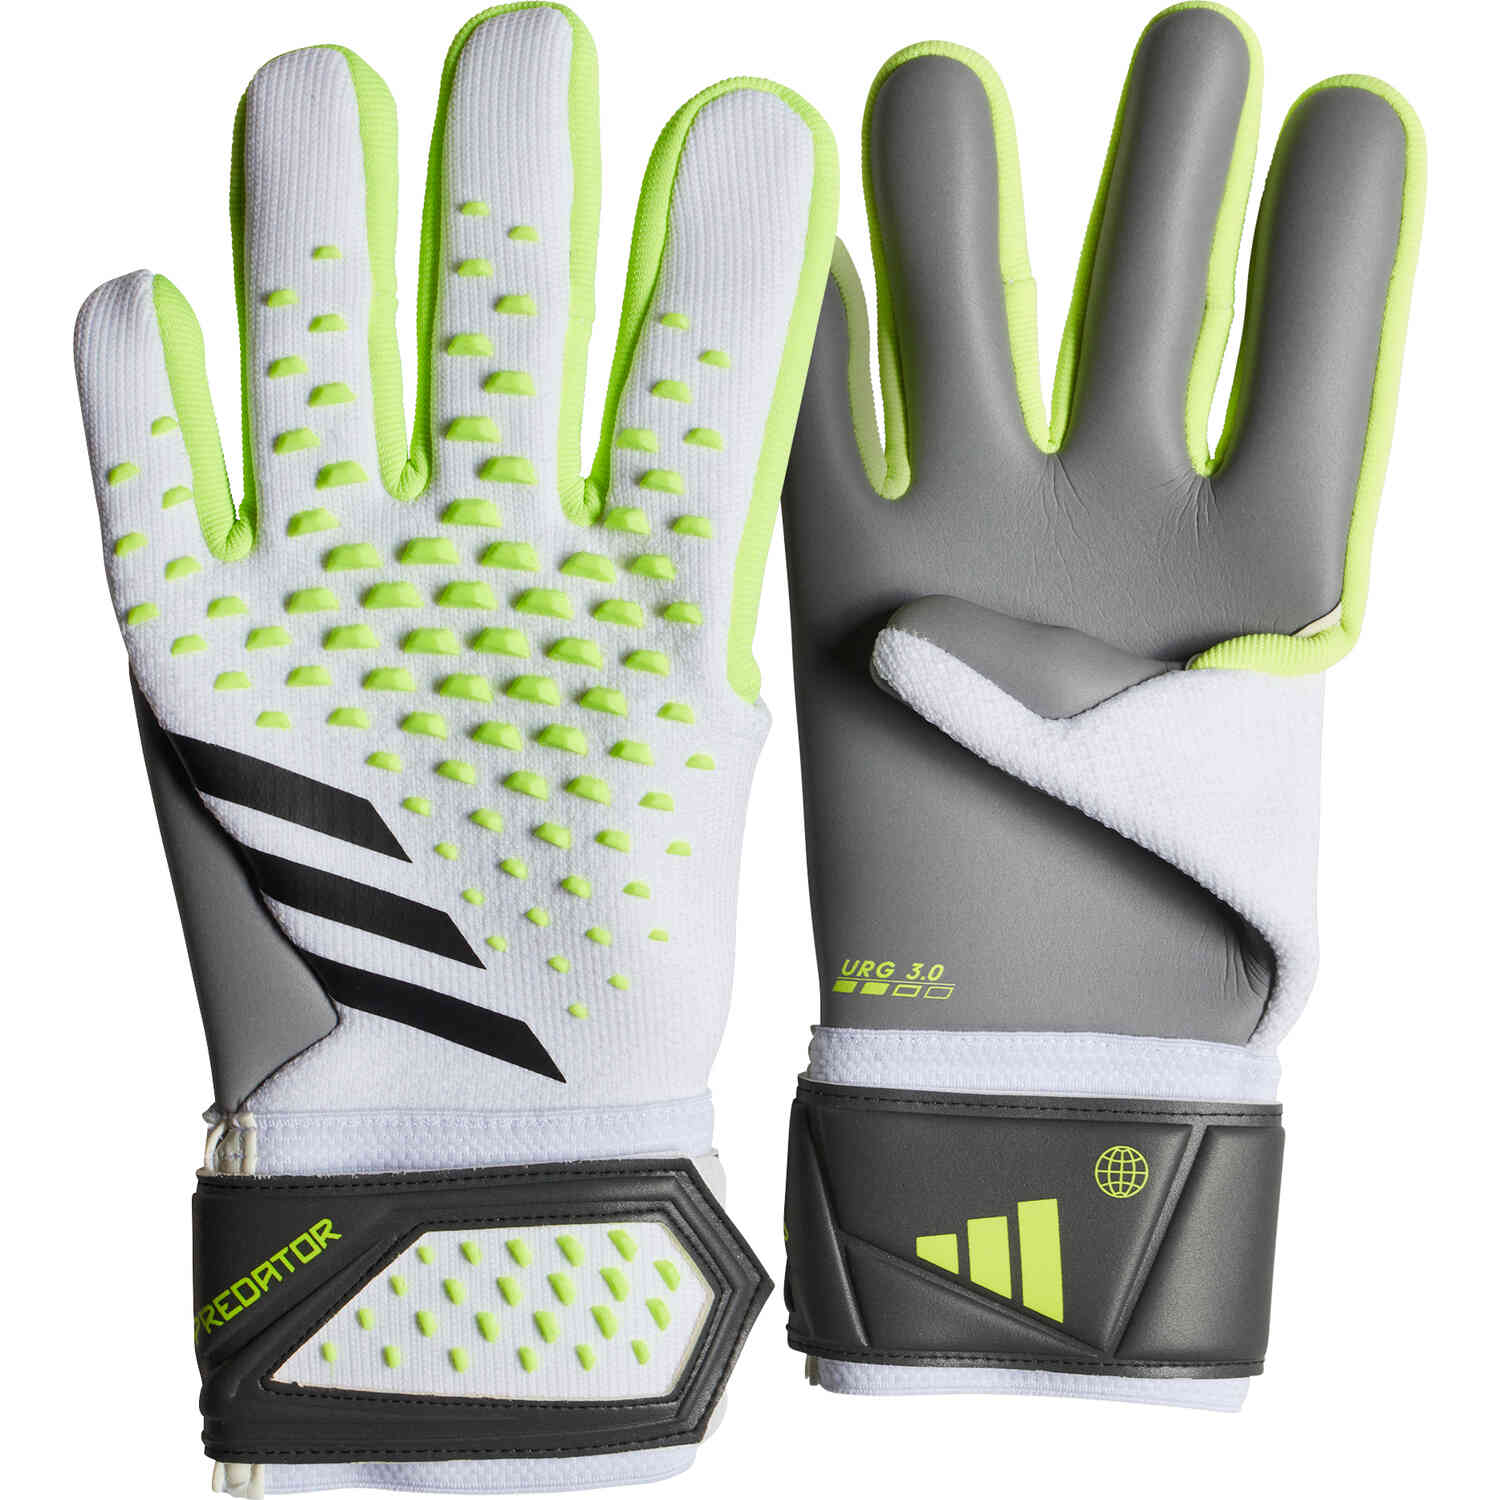 https://www.soccermaster.com/wp-content/uploads/ia0879_adidas_predator_league_gk_gloves_white_lucid_lemon_with_black_sm_01.jpg